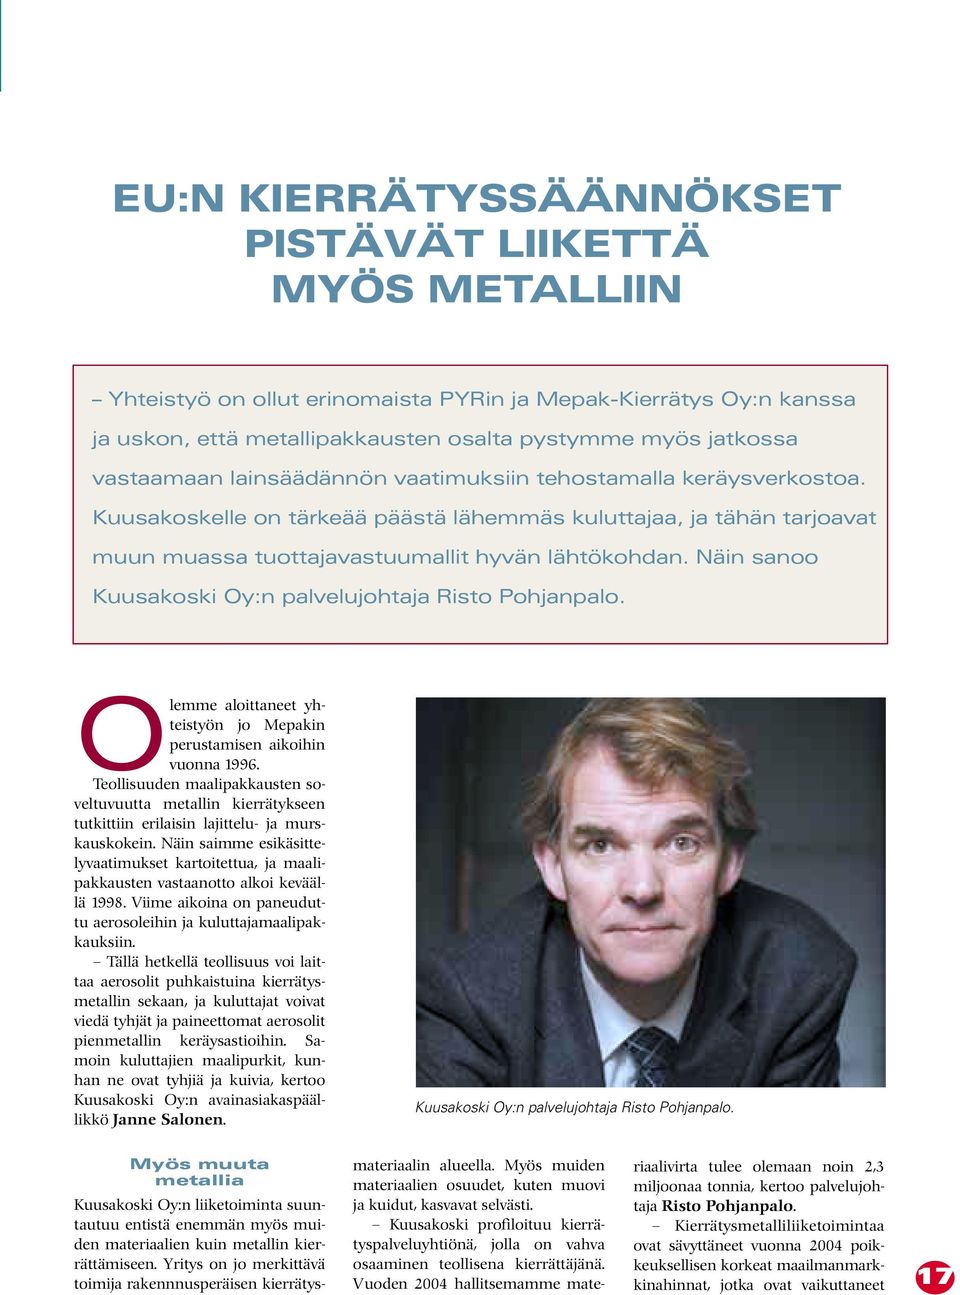 Näin sanoo Kuusakoski Oy:n palvelujohtaja Risto Pohjanpalo. Olemme aloittaneet yhteistyön jo Mepakin perustamisen aikoihin vuonna 1996.